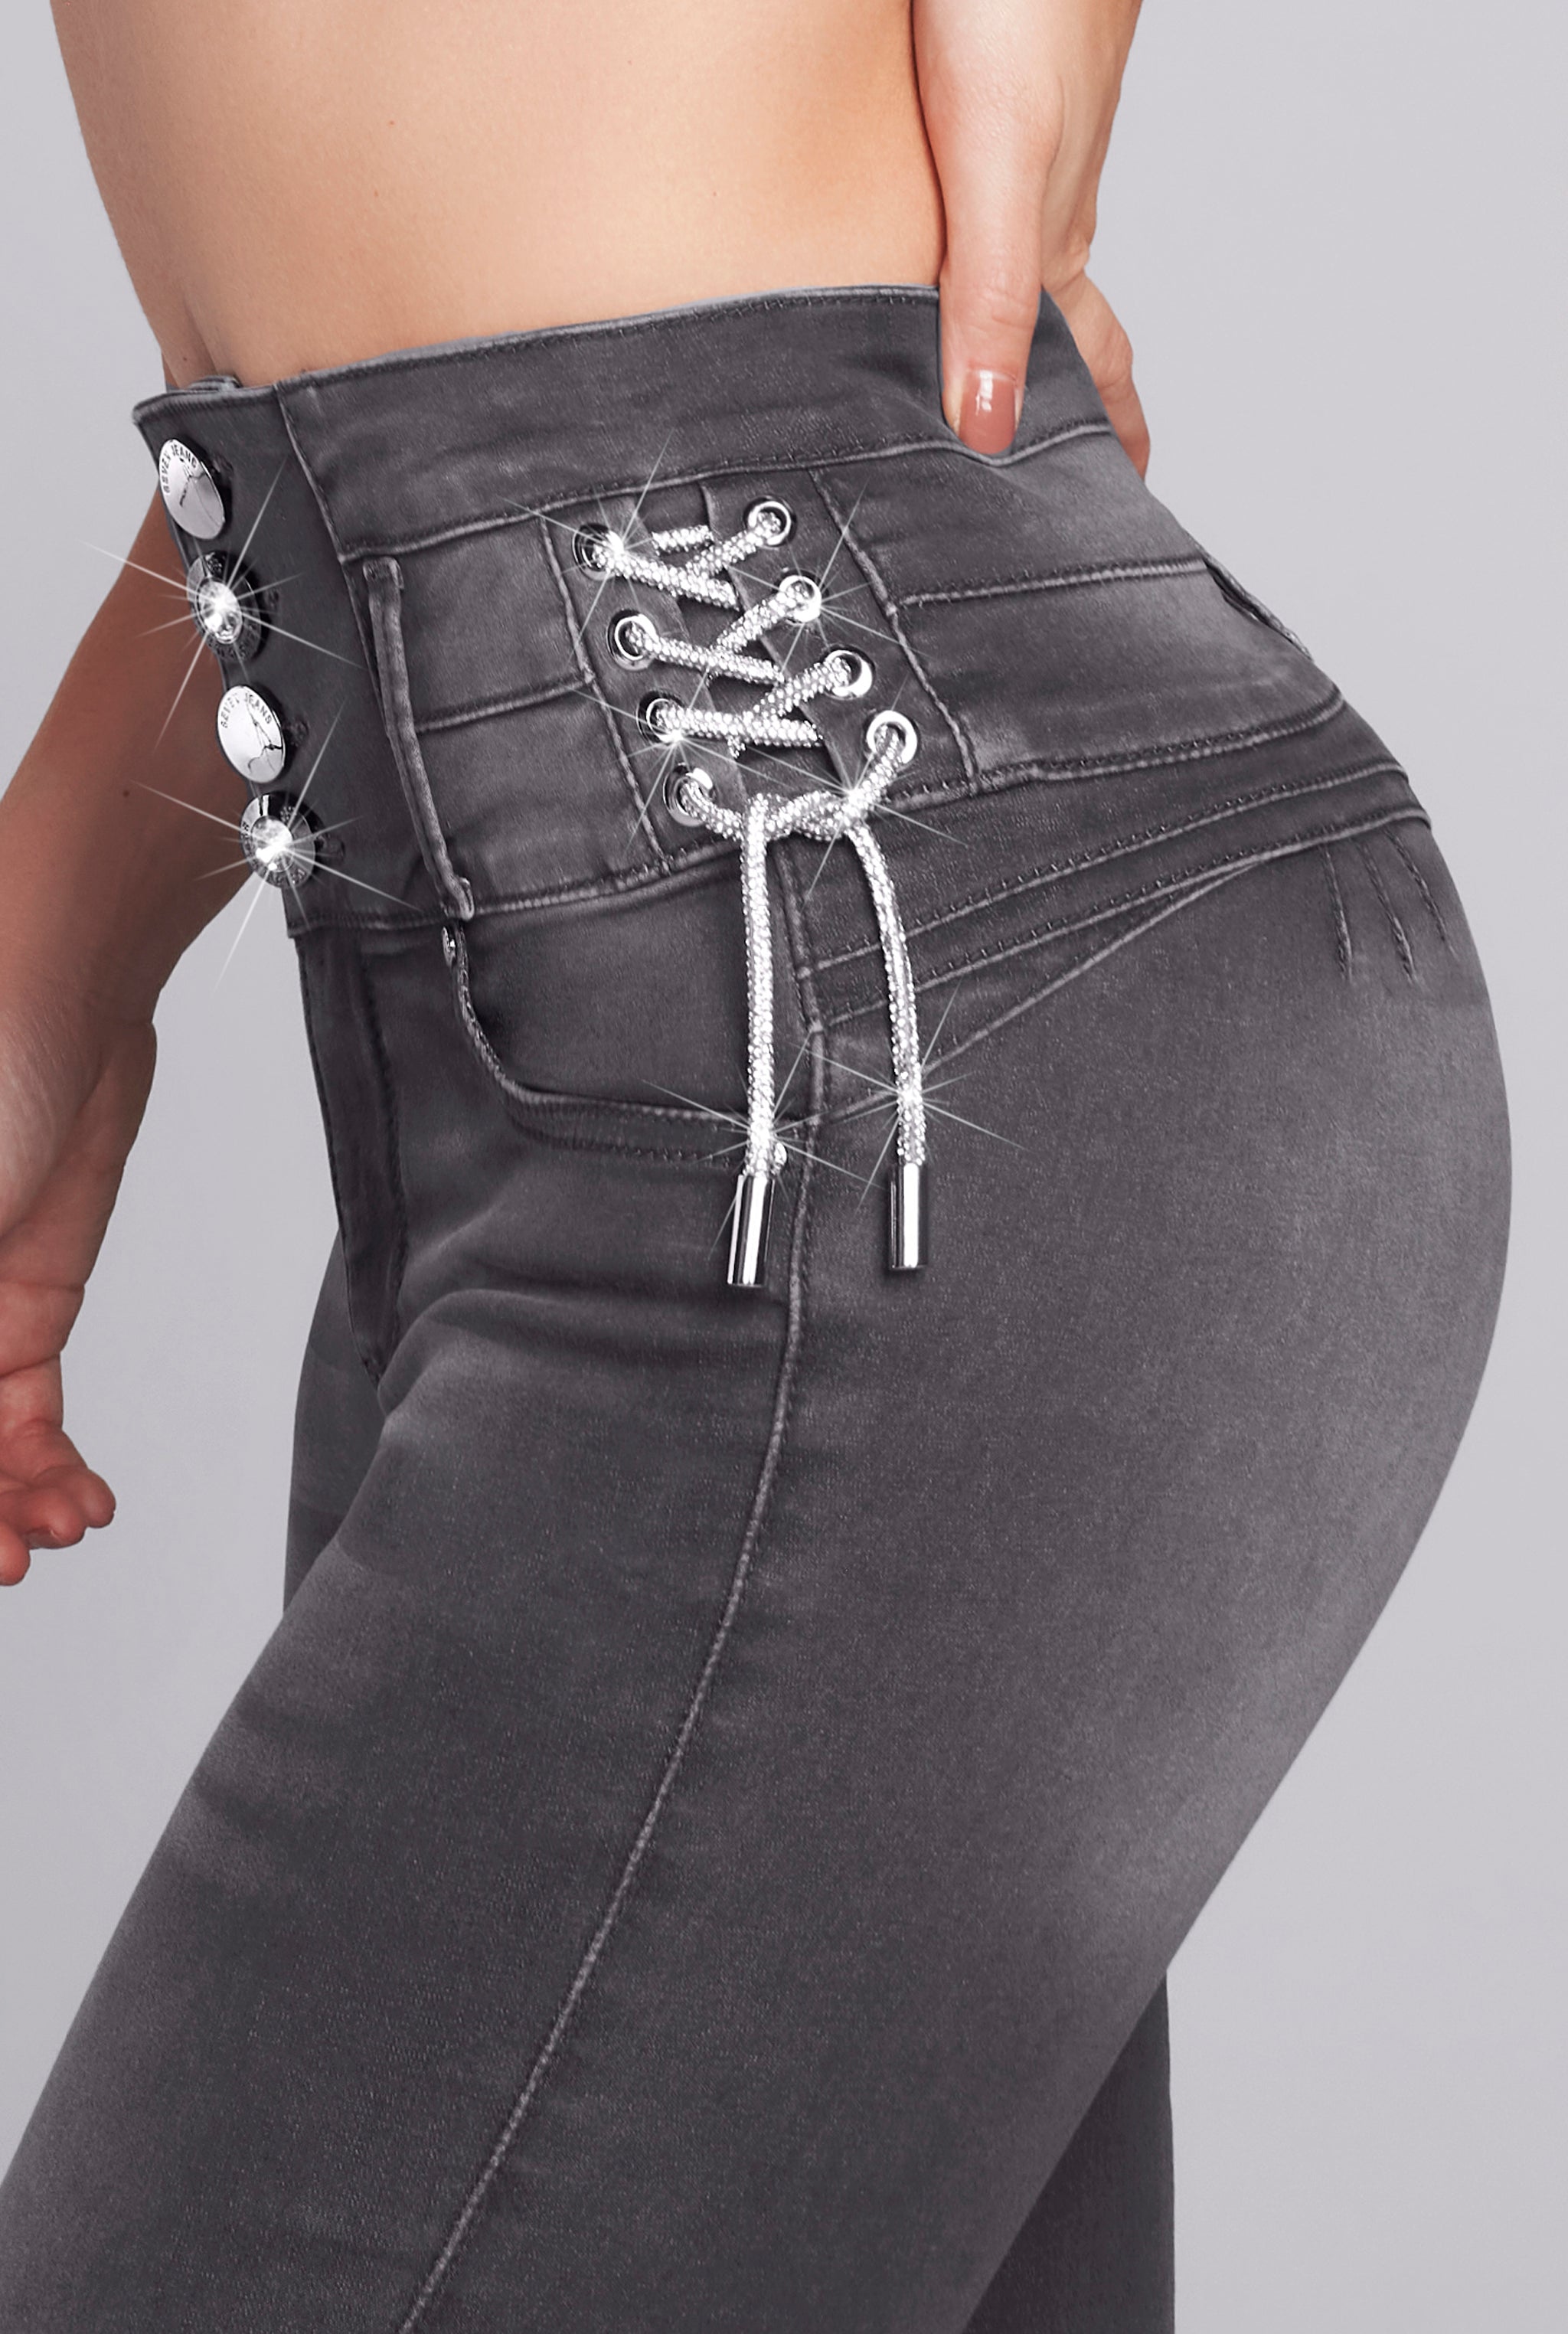 Jeans Súper Skinny Cintura Alta Push UP 9548GRIS